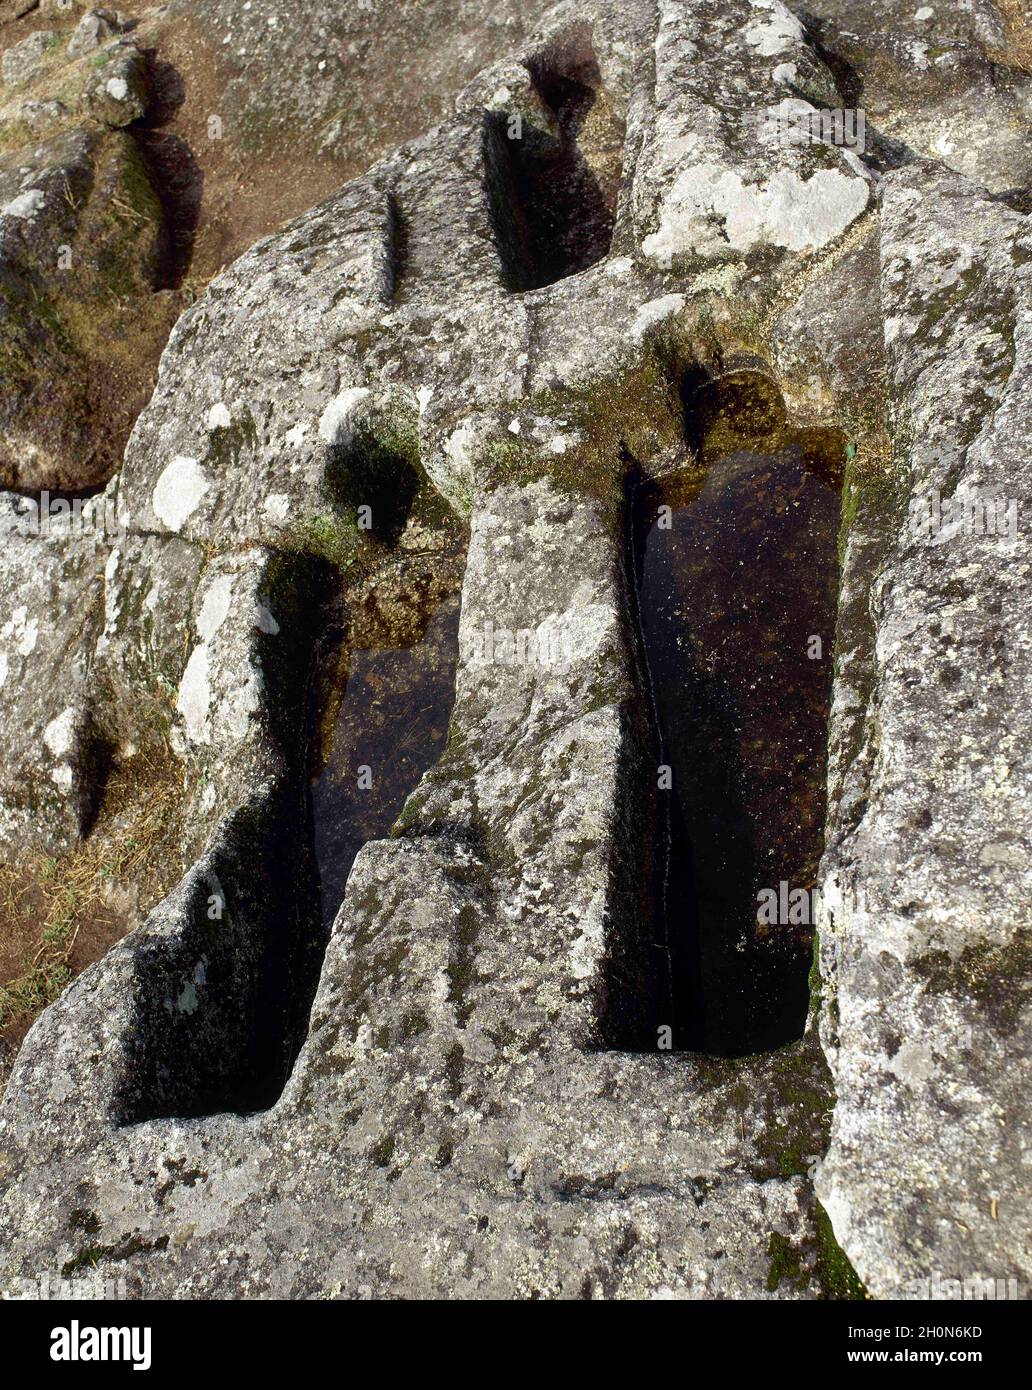 Spanien, Galizien, Provinz Ourense, Ribadavia. Nekropole des frühen Mittelalters (8.-9. Jahrhundert). Anthropomorphe Gräber, mit Hufeisenköpfen, in sto gegraben Stockfoto